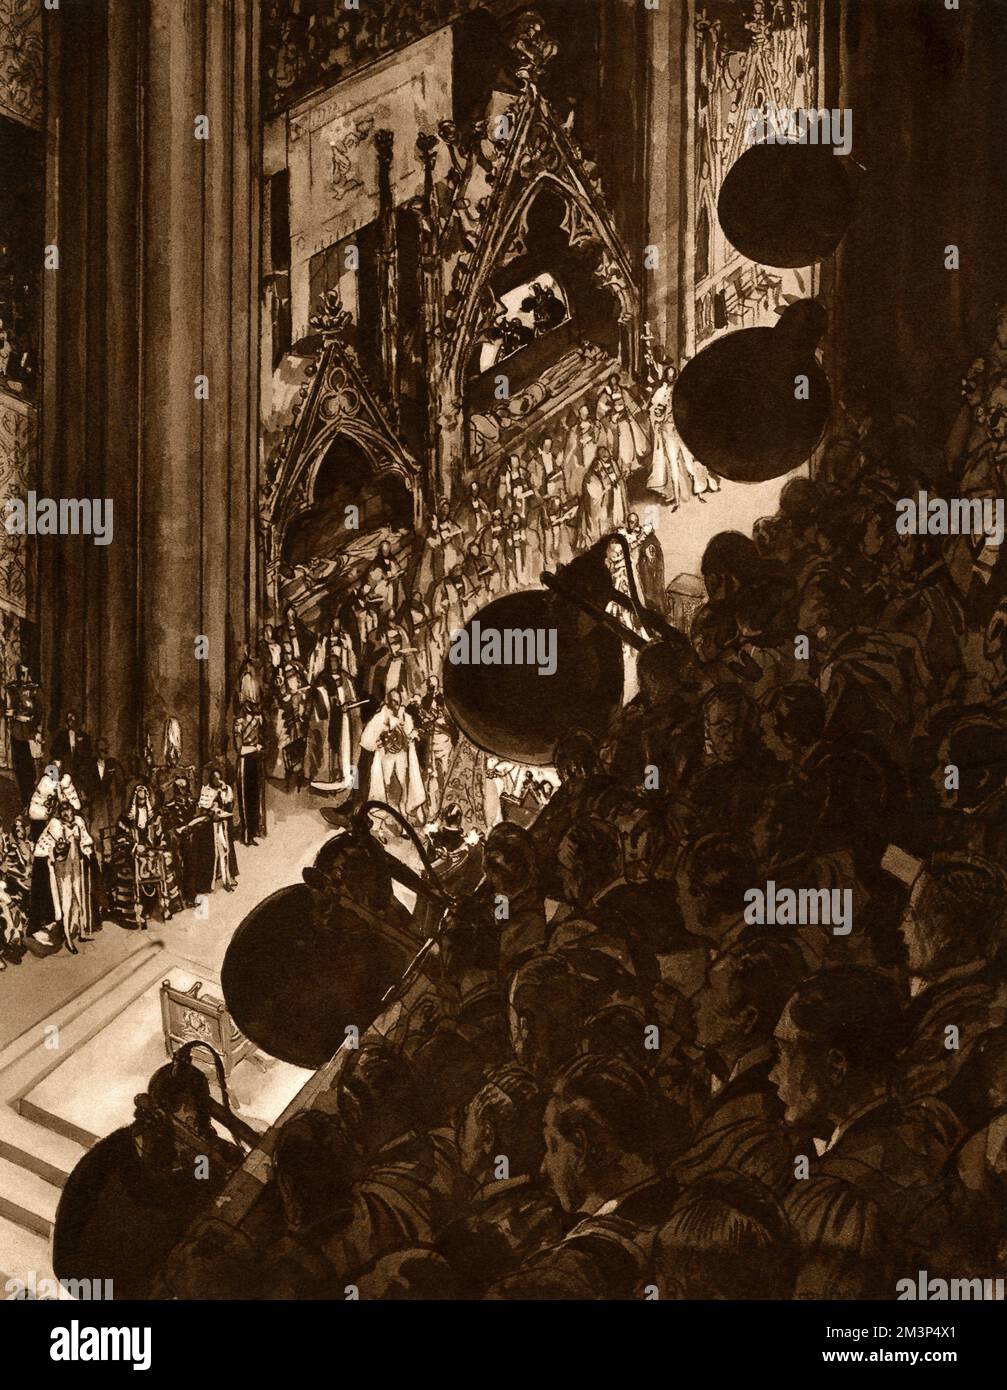 Die historische Zeremonie der Krönung von König George VI. Und seiner Gemahlin, Königin Elizabeth, drehte zum ersten Mal. Viele Schwierigkeiten mußten überwunden werden, darunter auch spezielle Beleuchtungseinrichtungen. Abbildung zeigt die leistungsstarken Flutlichter, die in unauffälligen Positionen rund um das Triforium und im Dach über dem Theater montiert sind. Datum: 1937 Stockfoto